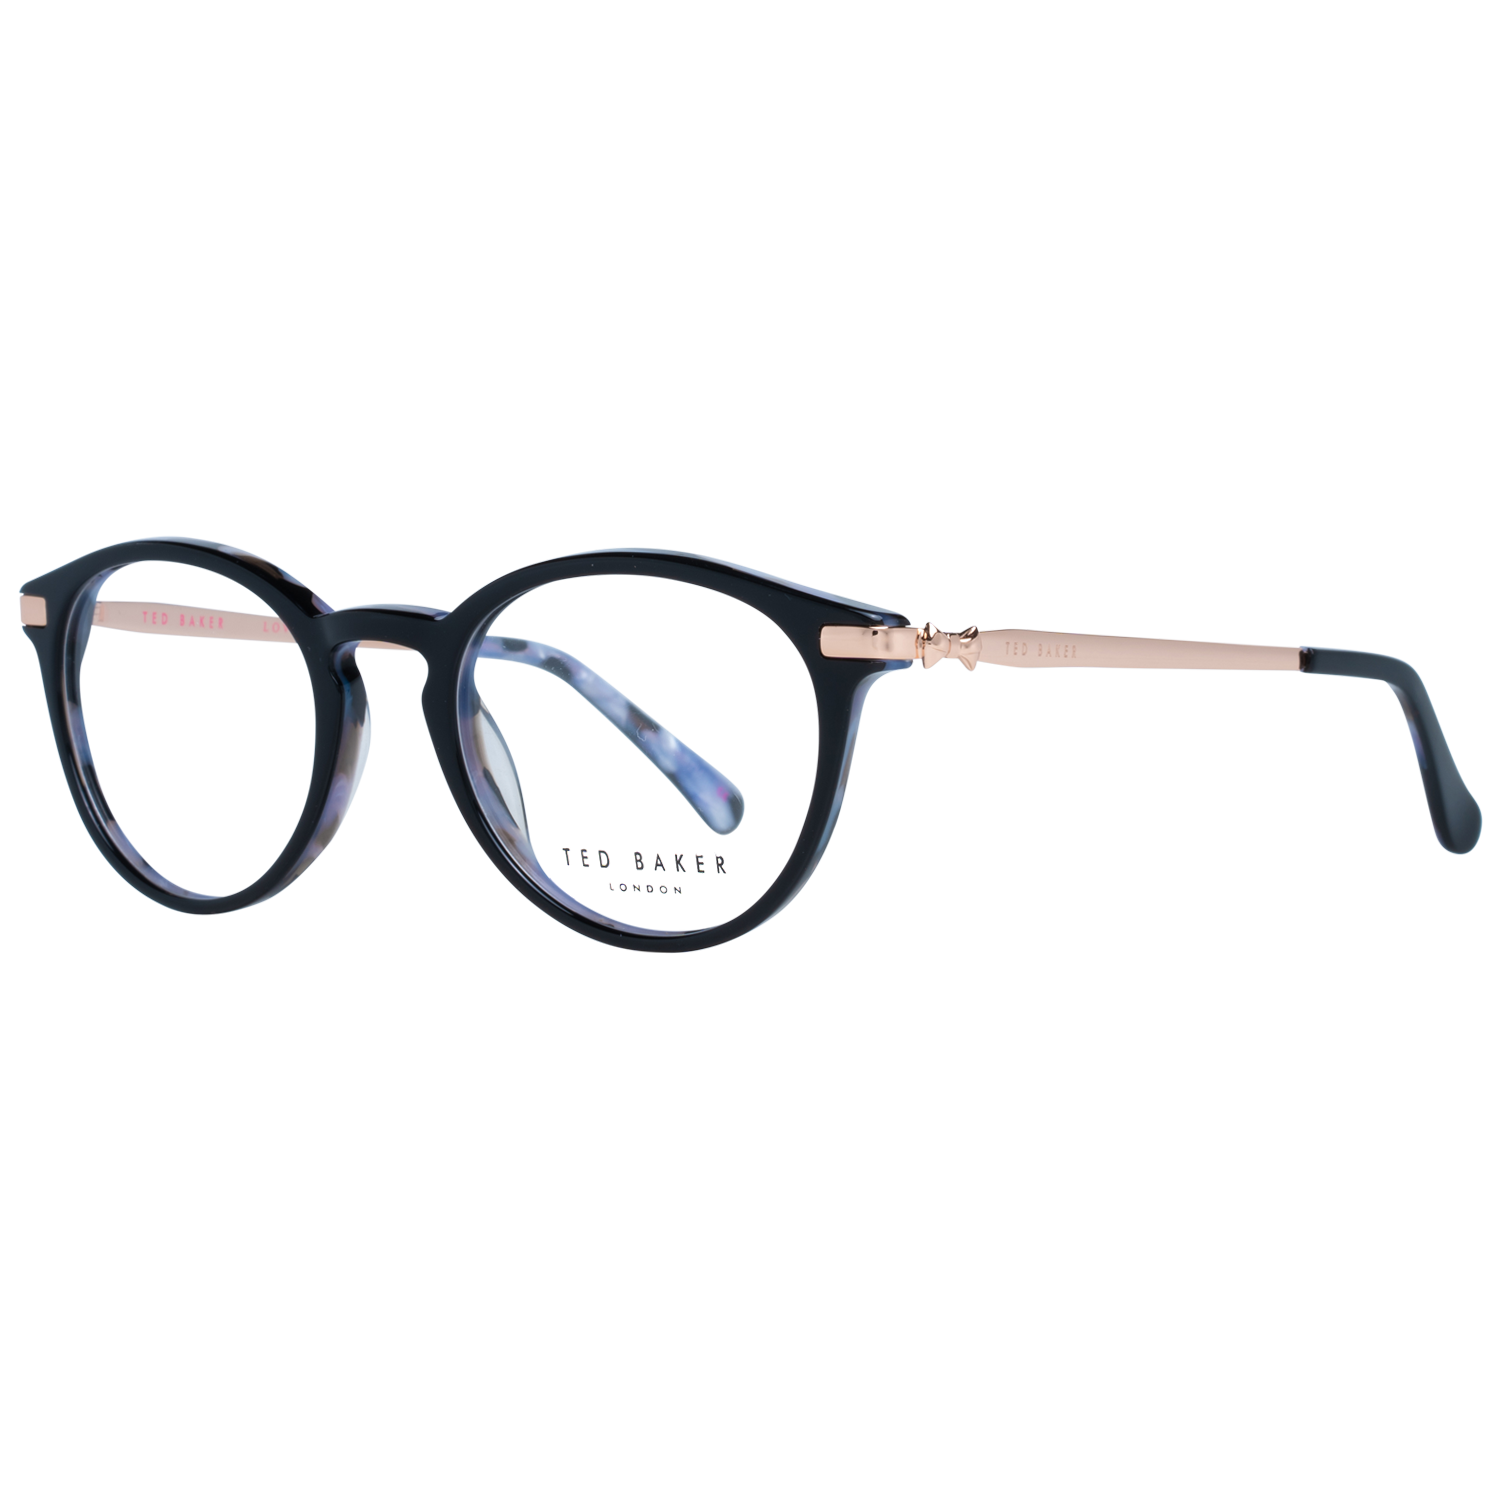 Ted Baker Frames Ted Baker Optical Frame Prescription Glasses TB9132 026 49 Eyeglasses Eyewear UK USA Australia 